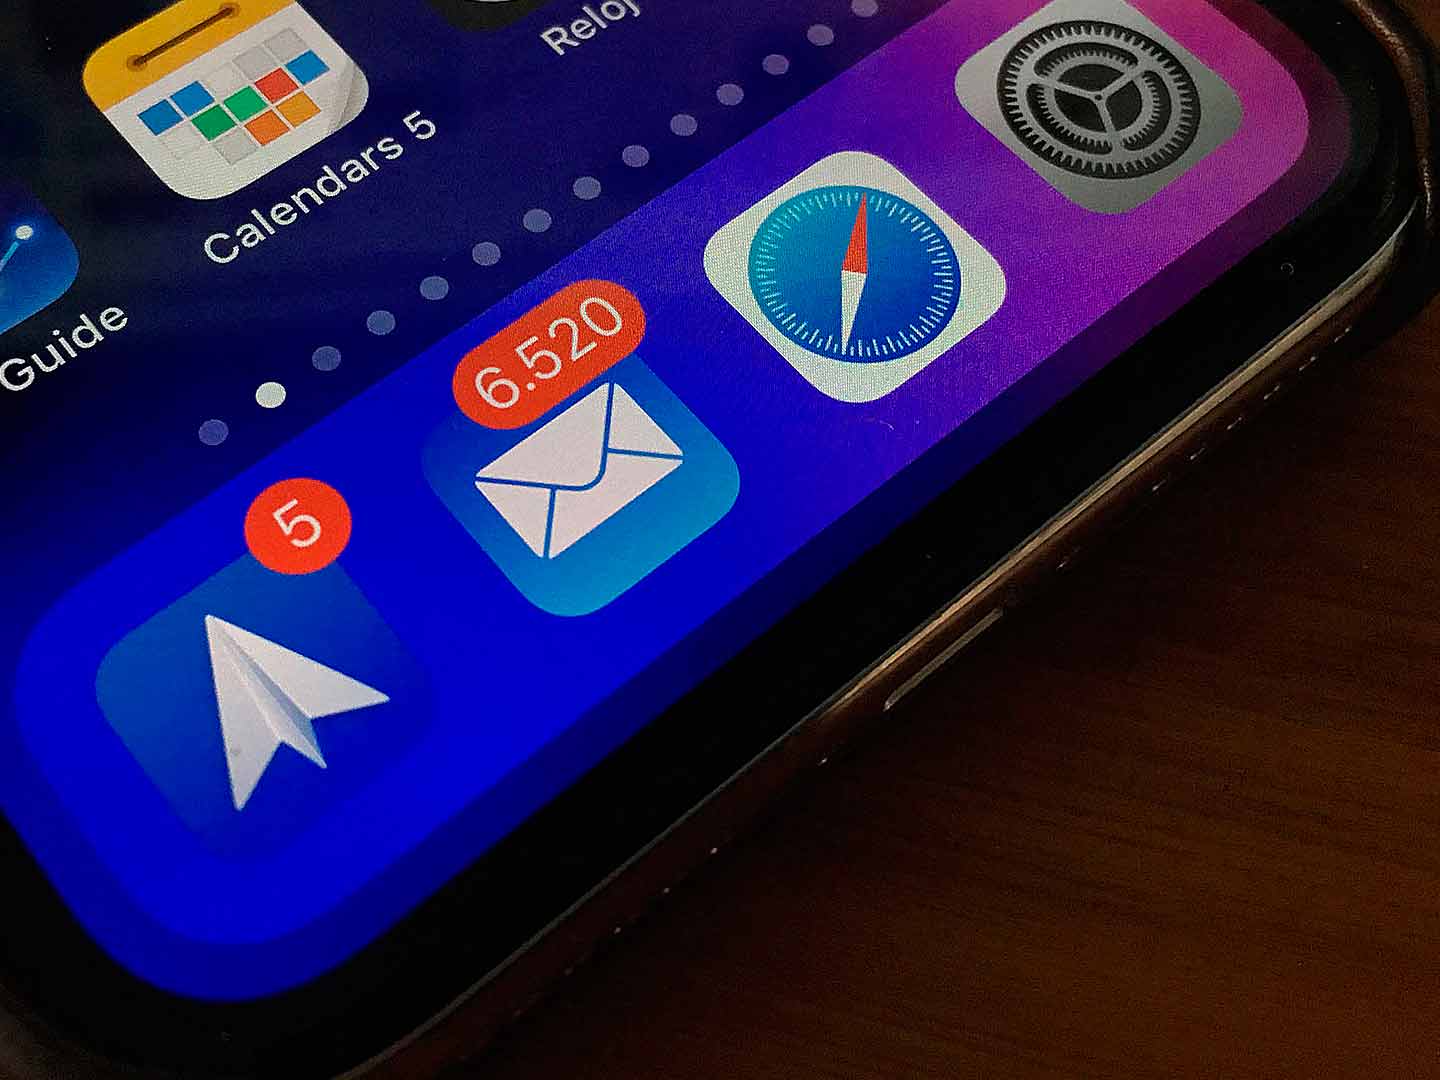 Cambiar app Mail por Spark de forma predeterminada en iOS 14